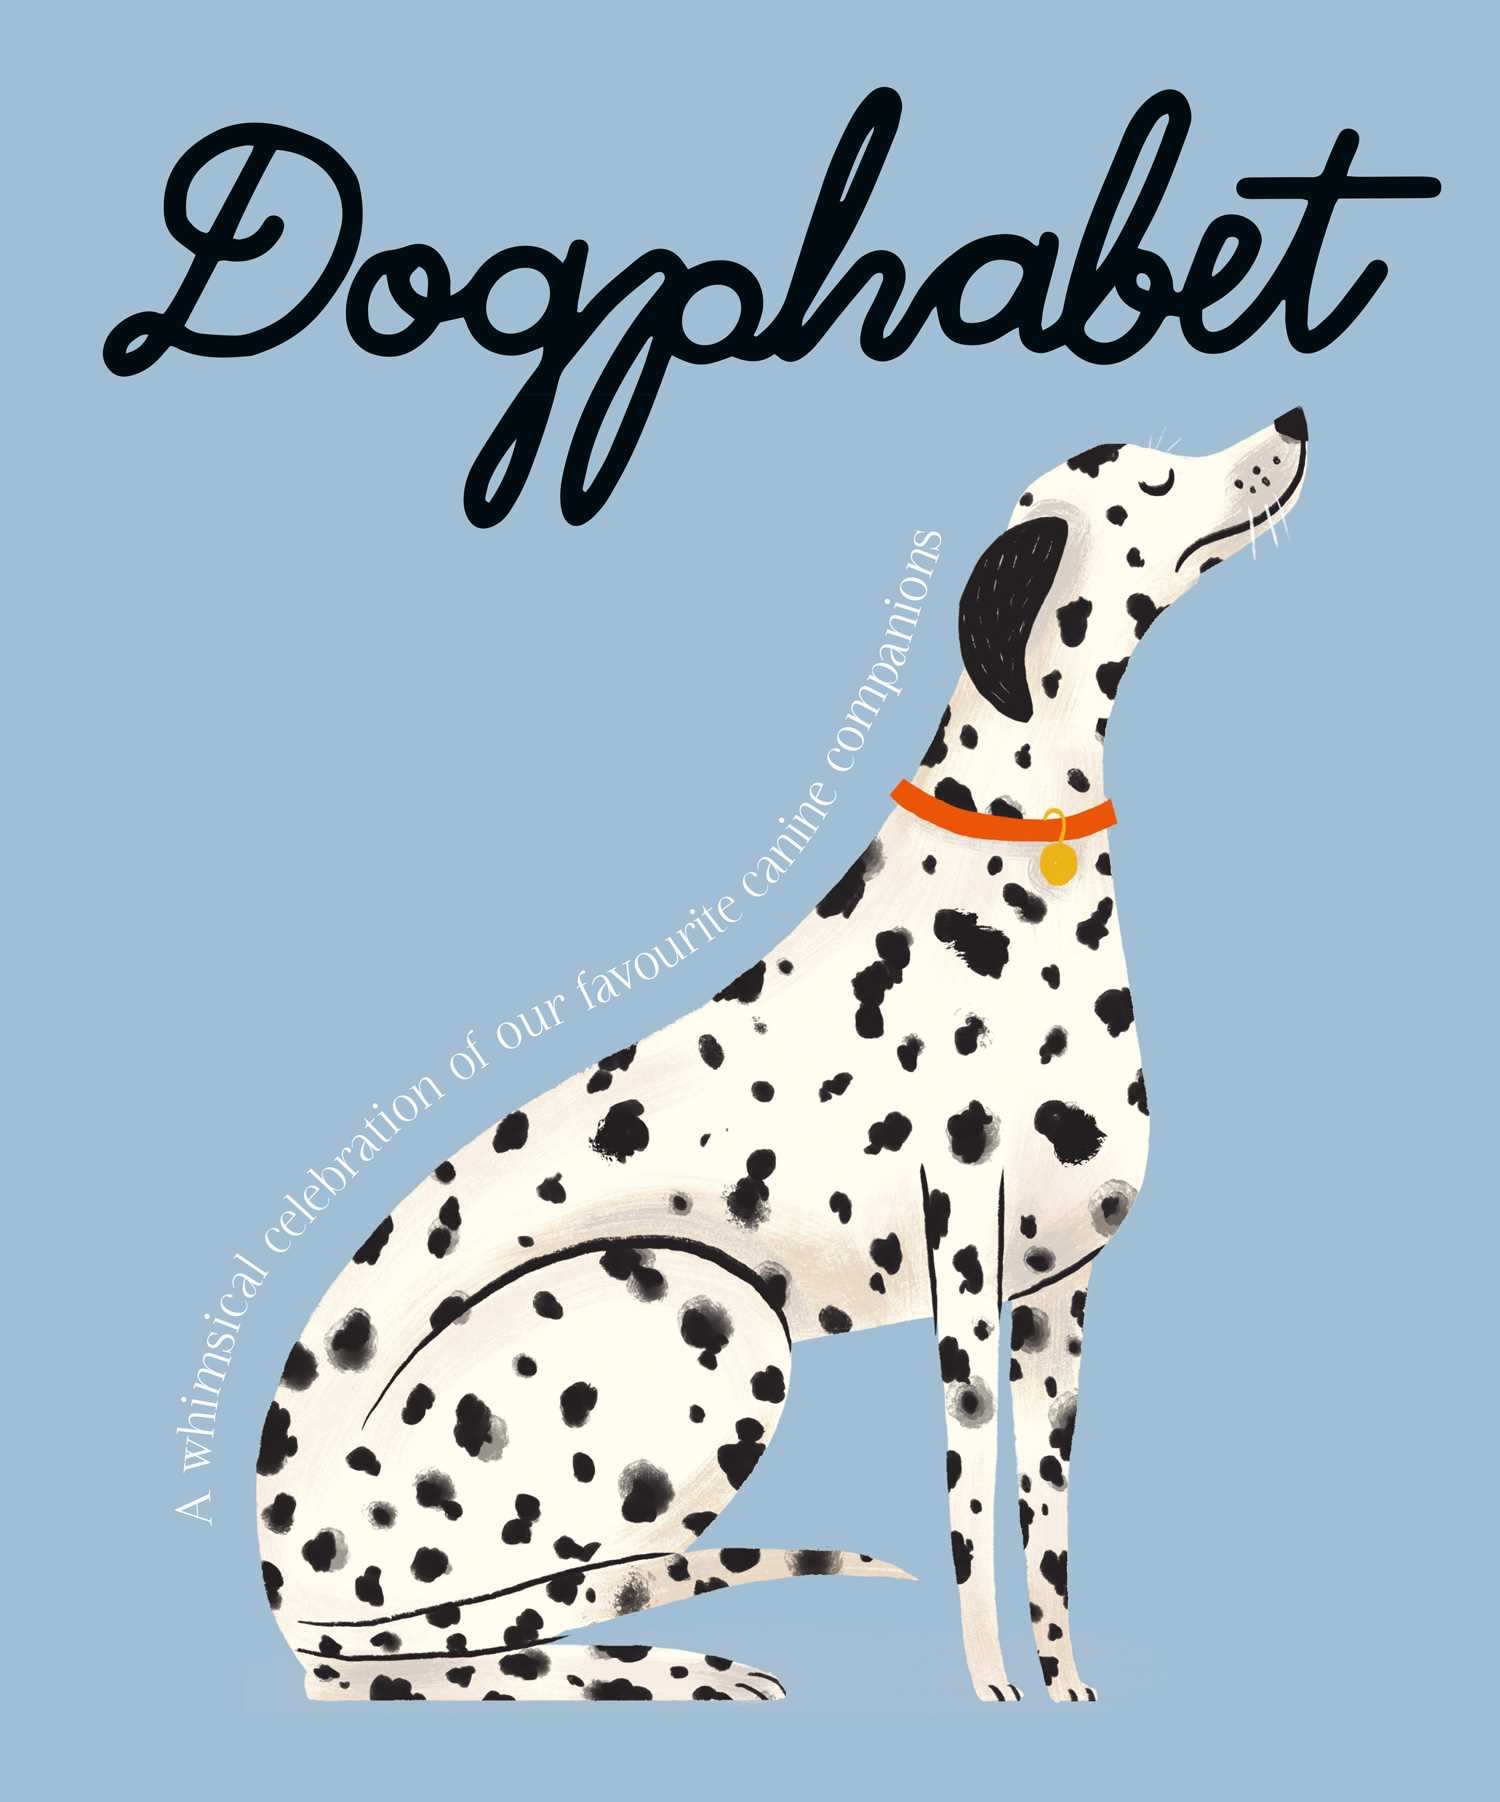 Dogphabet